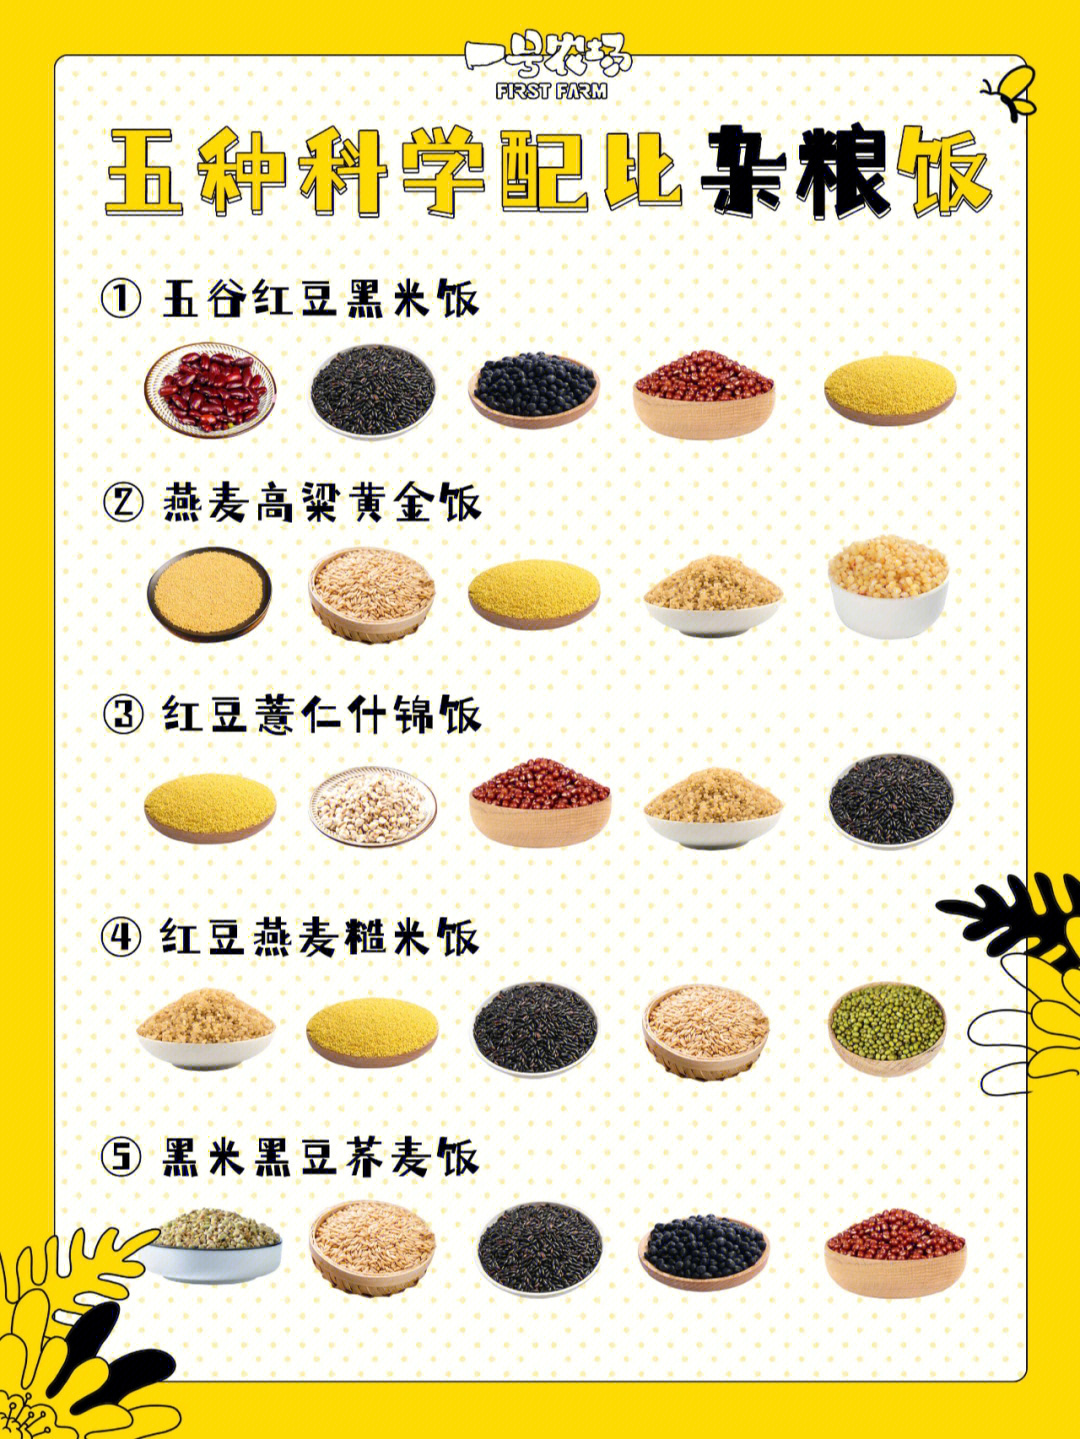 杂粮饭搭配:01五谷红豆黑米饭小米,红小豆,黑豆,红芸豆,黑米02 燕麦